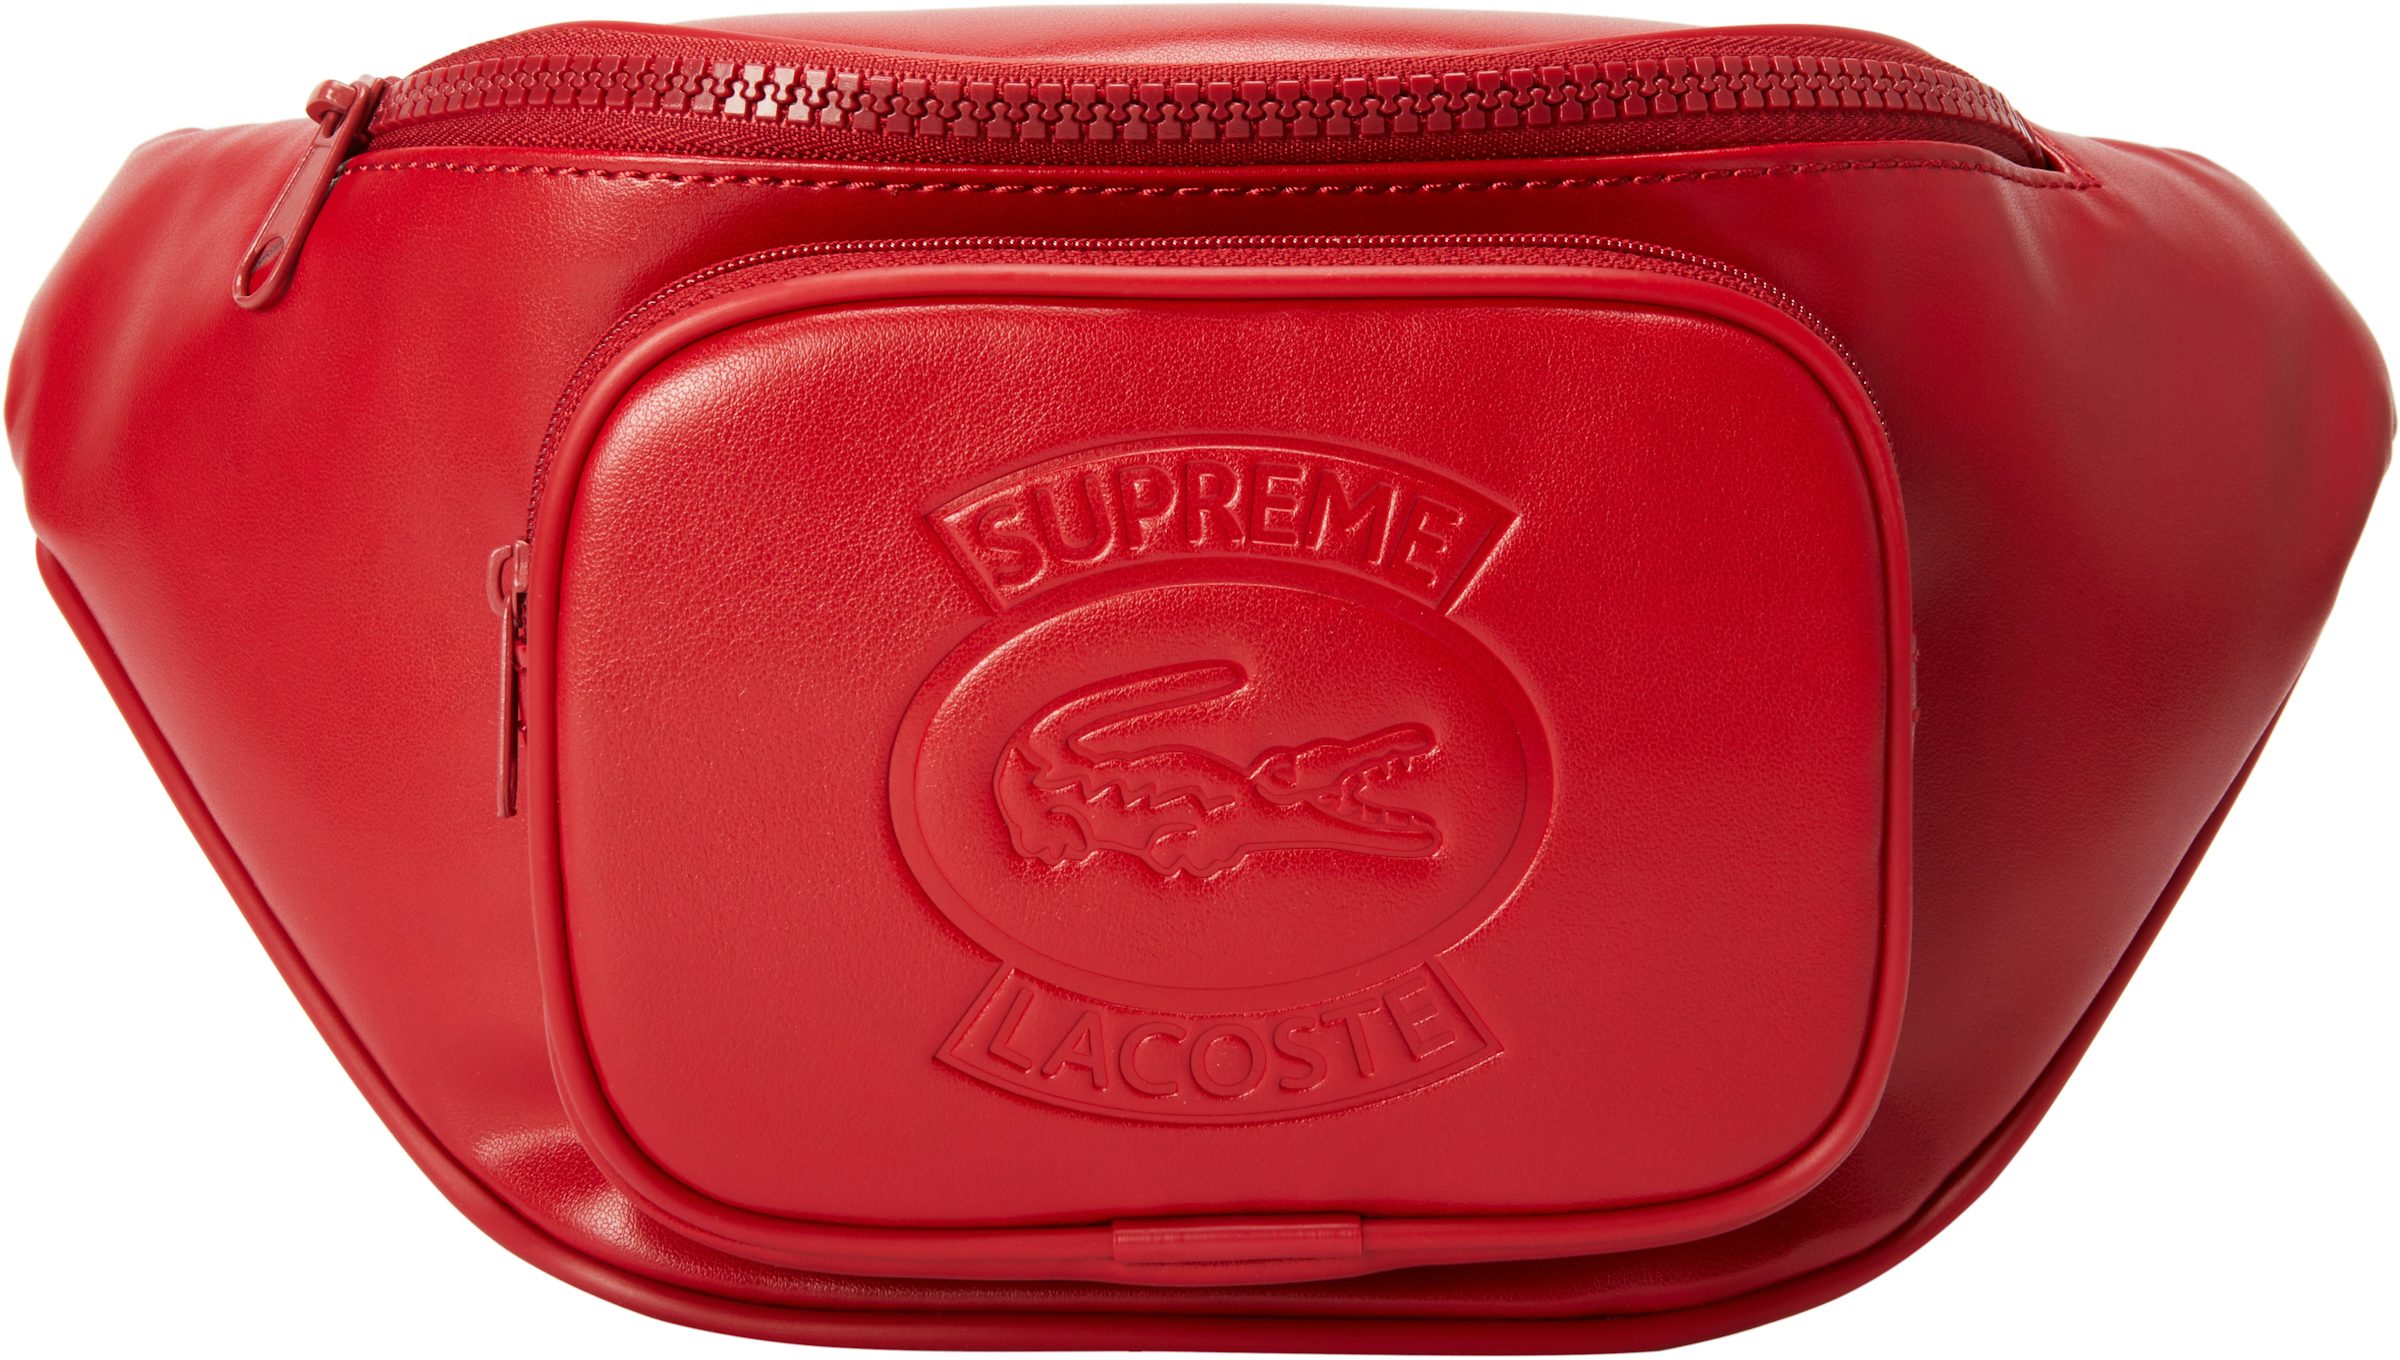 Supreme x Lacoste Messenger Bag - Farfetch